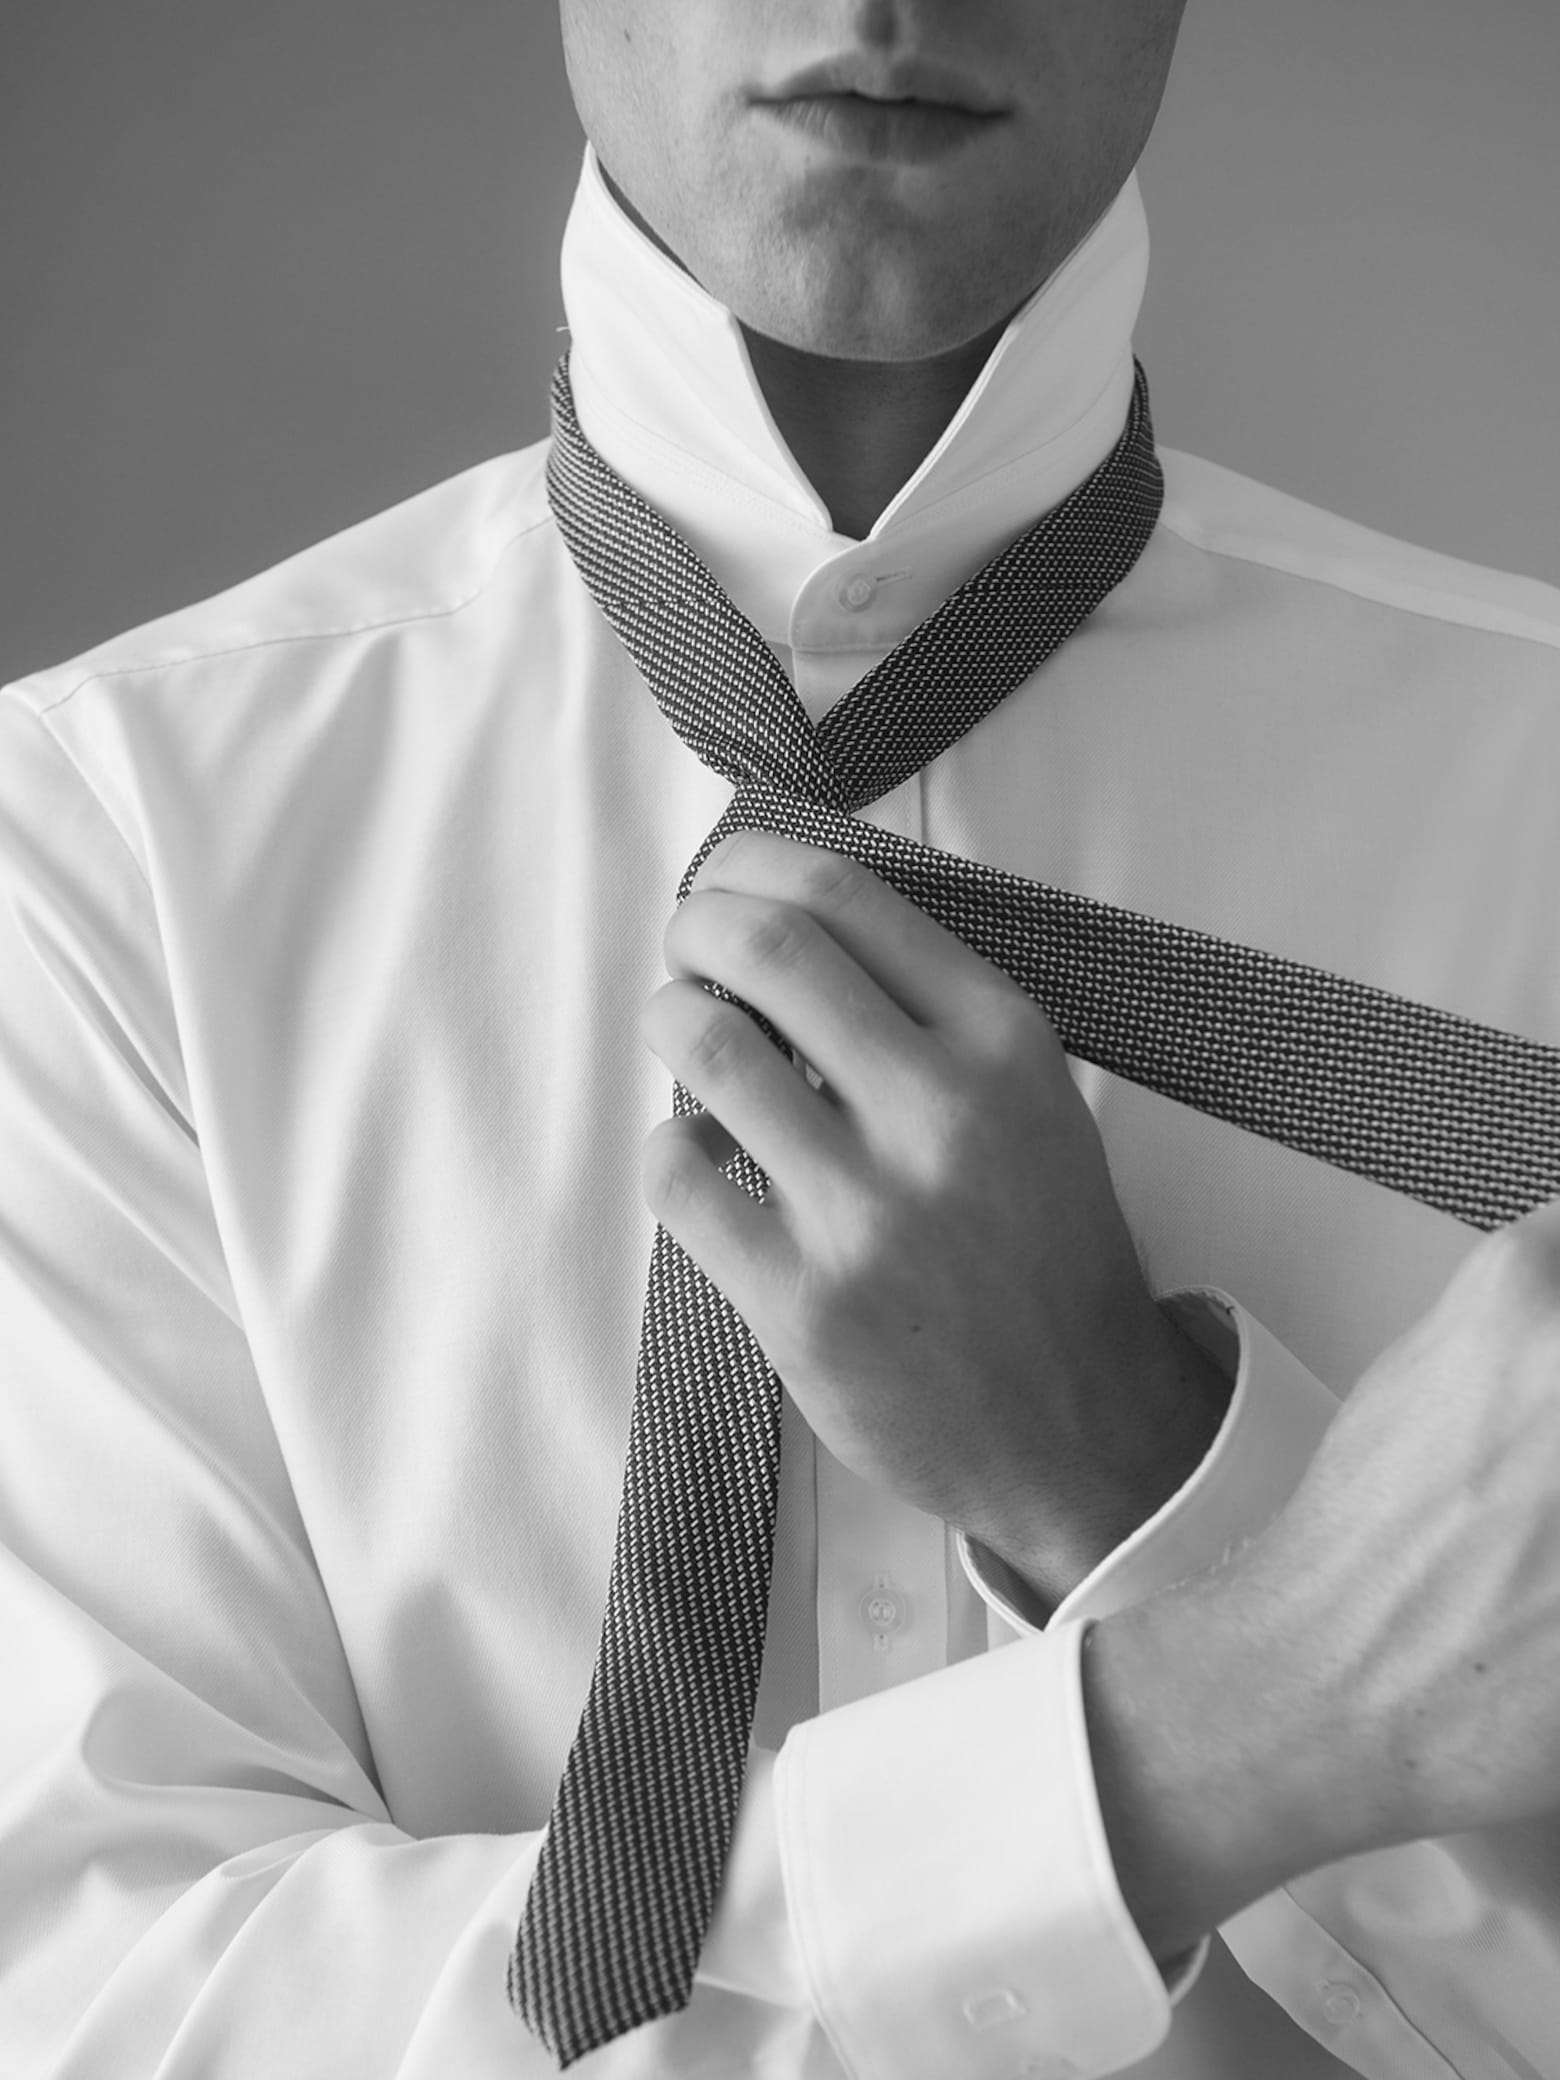 Schritt für Schritt Wie bindet man eine Krawatte